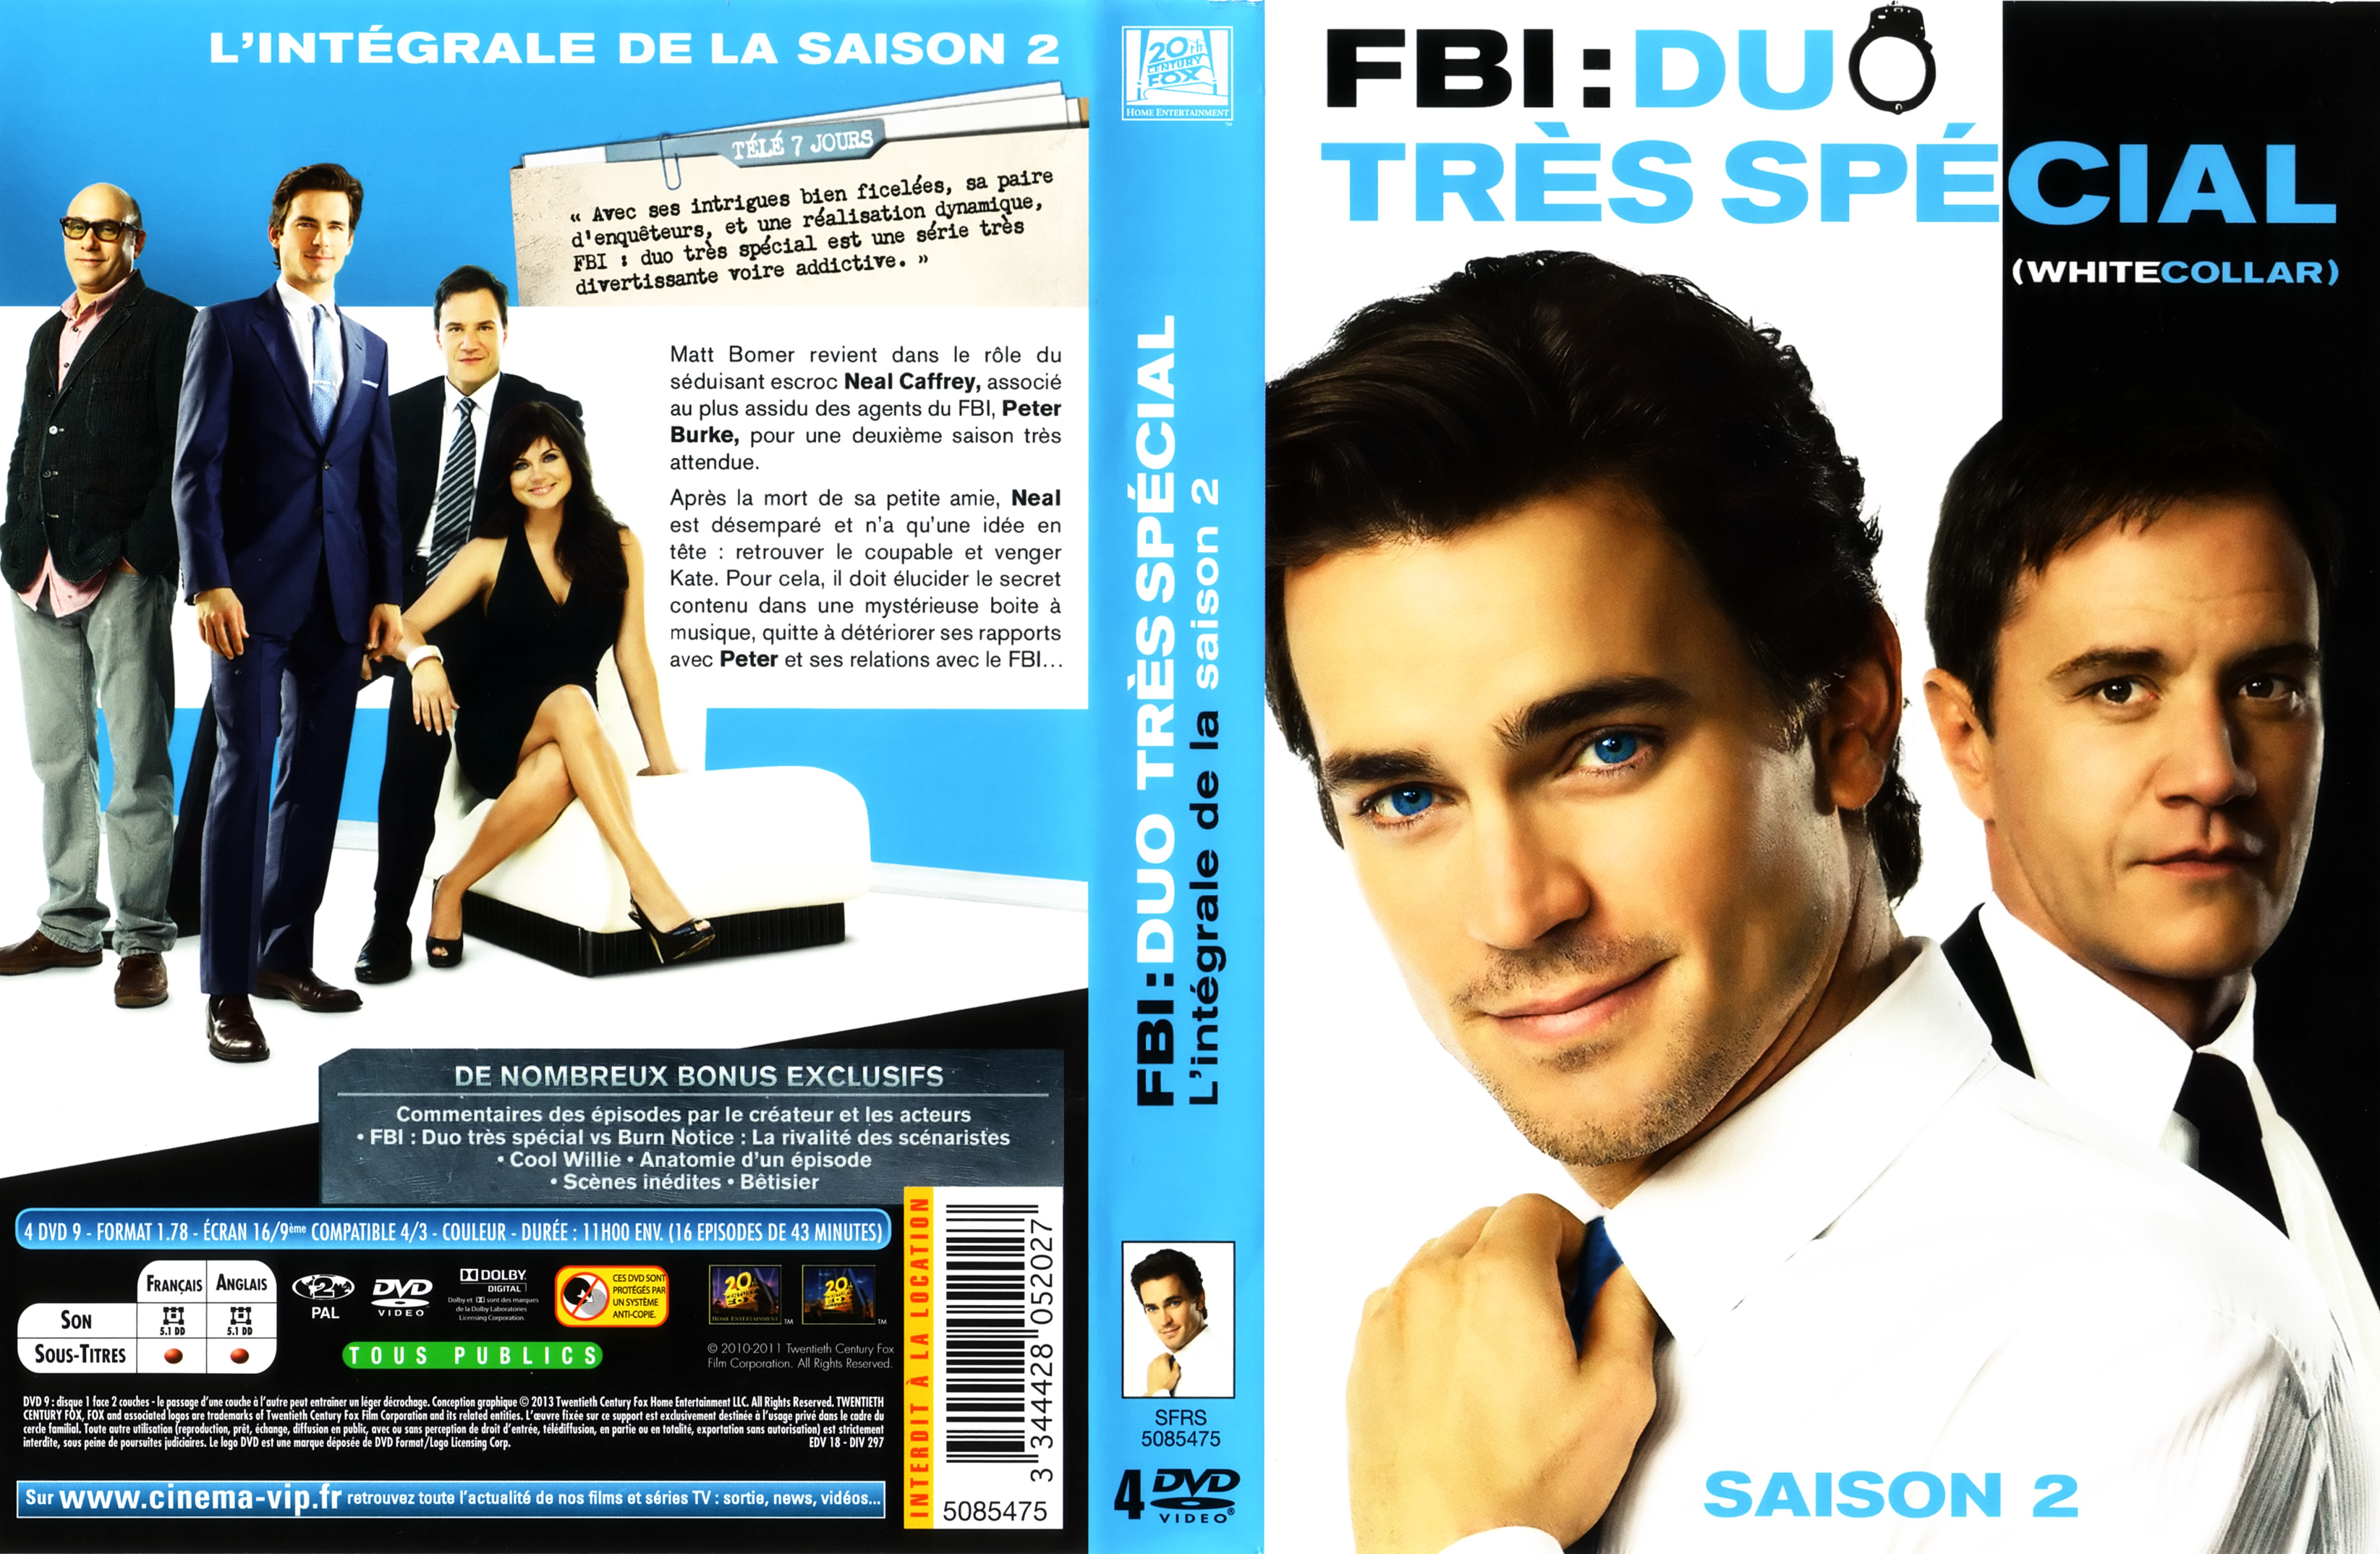 Jaquette DVD FBI duo trs spcial White collar saison 2 COFFRET